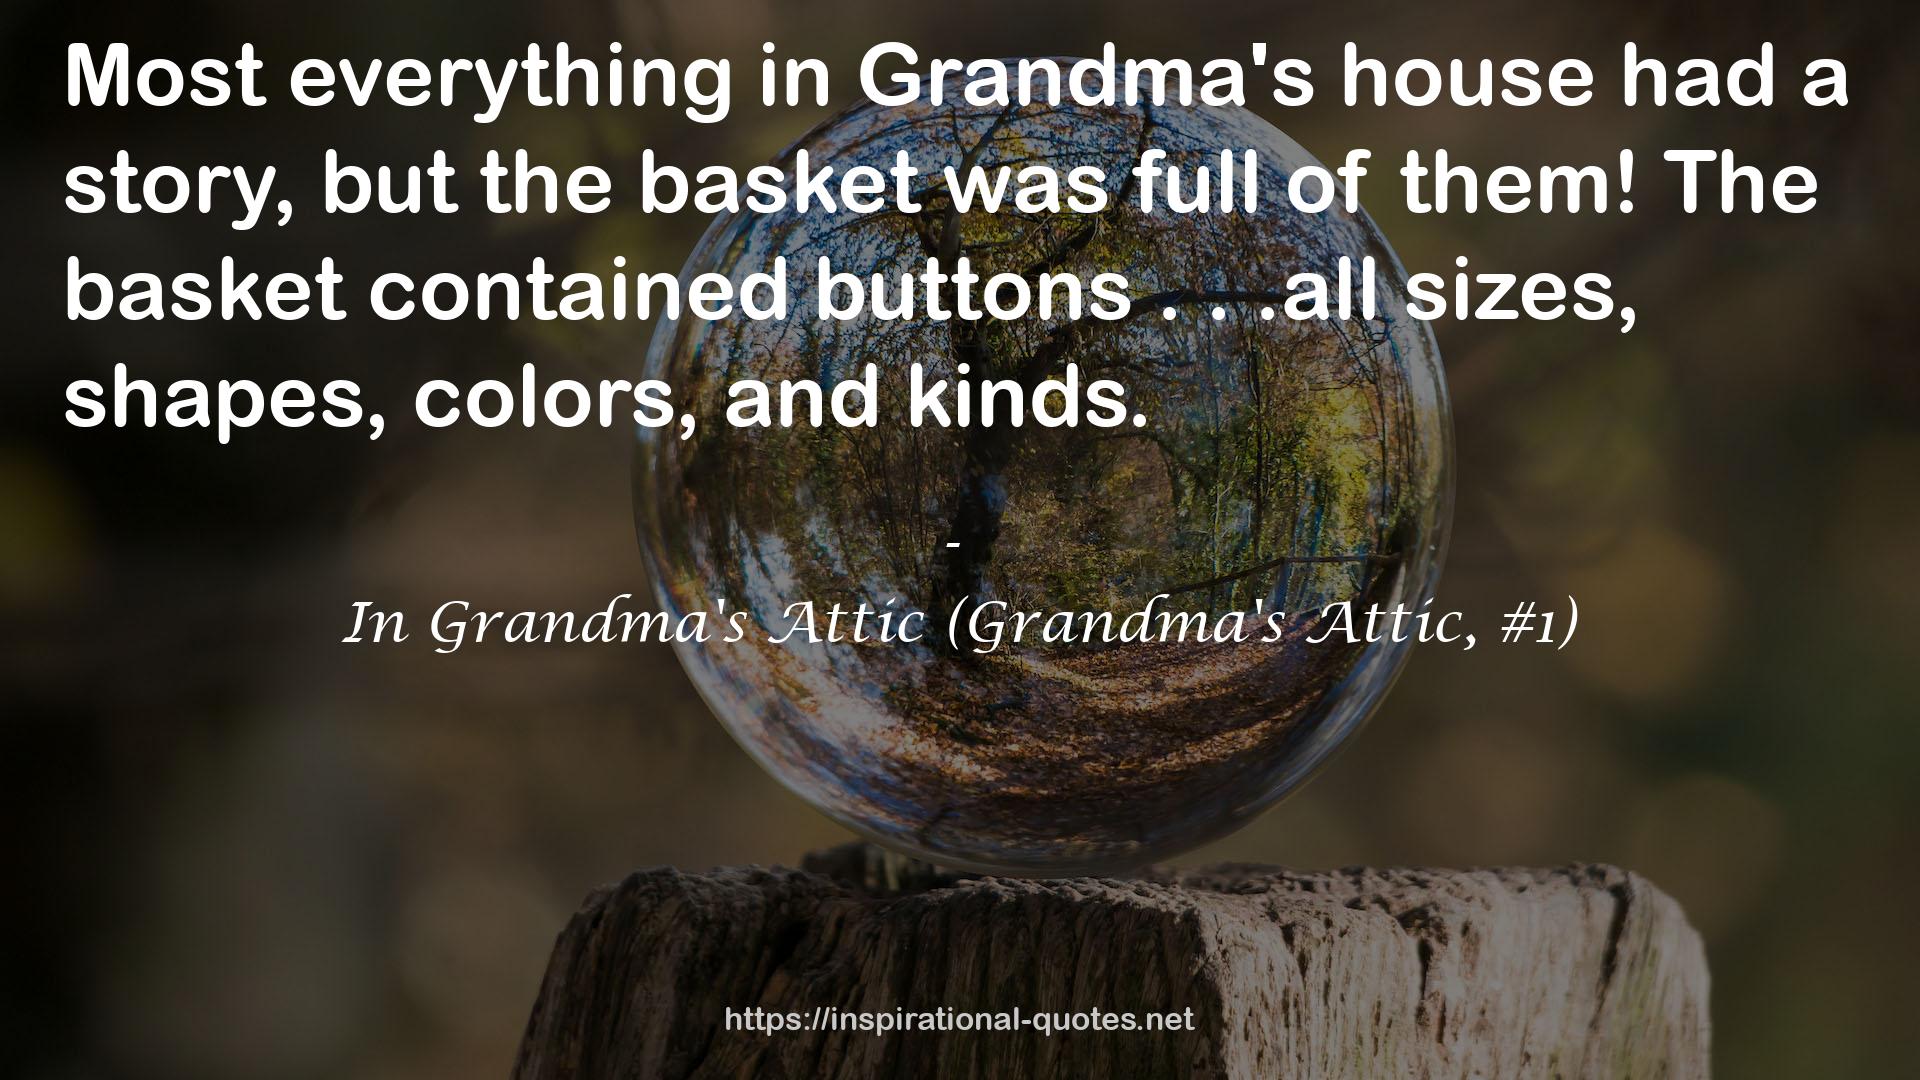 In Grandma's Attic (Grandma's Attic, #1) QUOTES